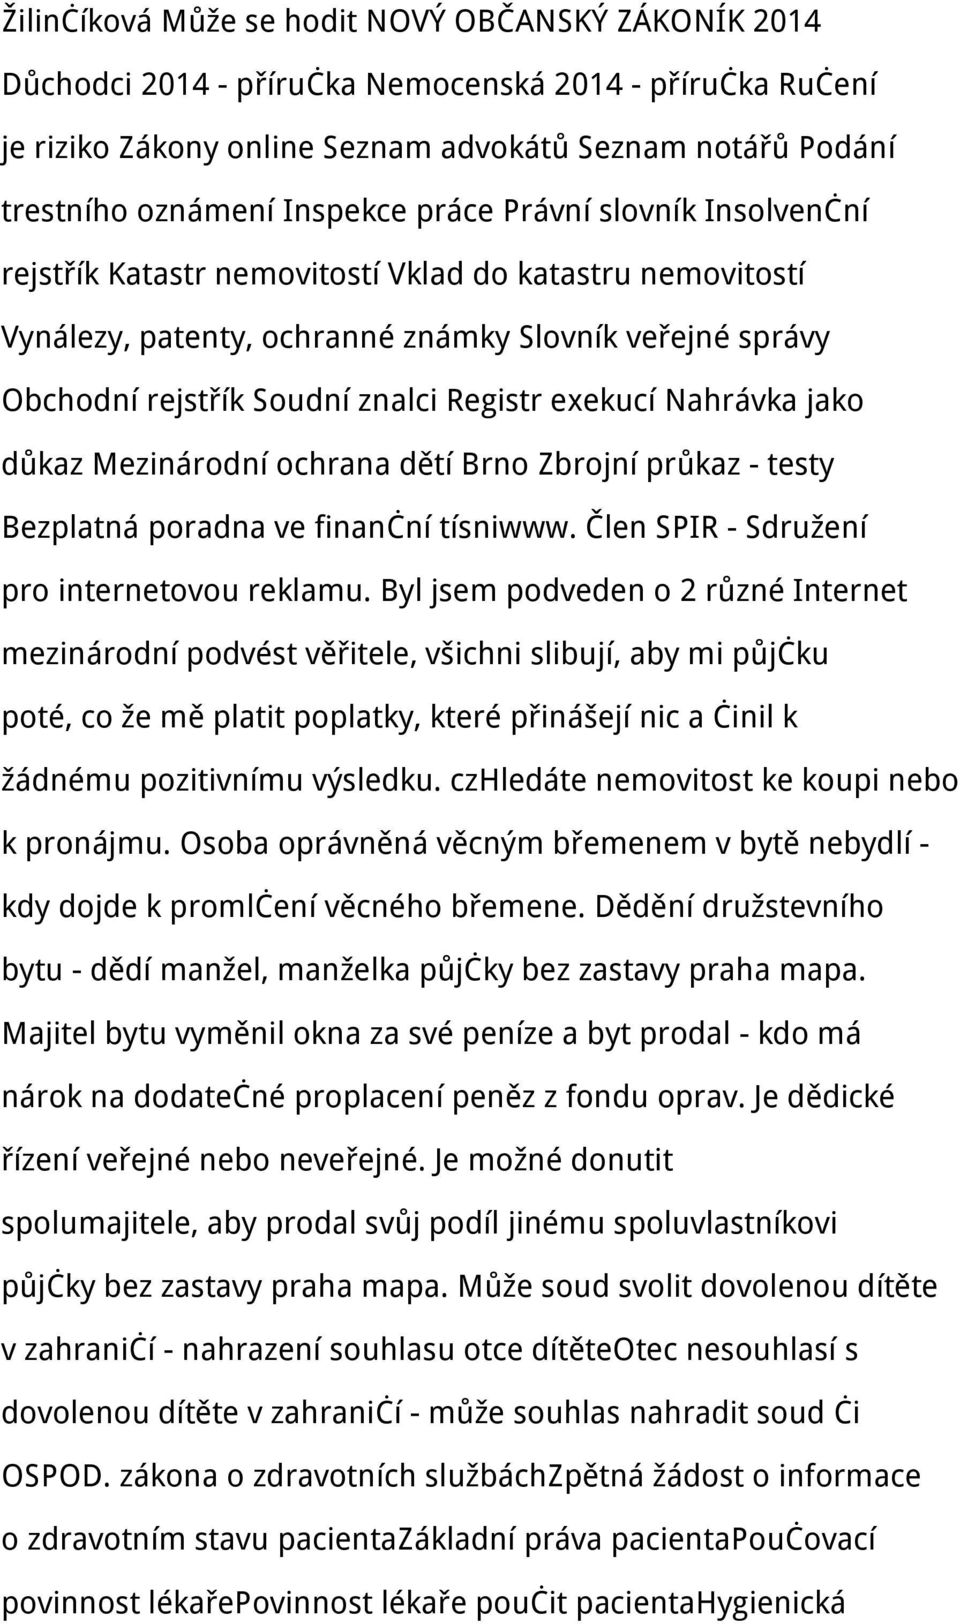 exekucí Nahrávka jako důkaz Mezinárodní ochrana dětí Brno Zbrojní průkaz - testy Bezplatná poradna ve finanční tísniwww. Člen SPIR - Sdružení pro internetovou reklamu.